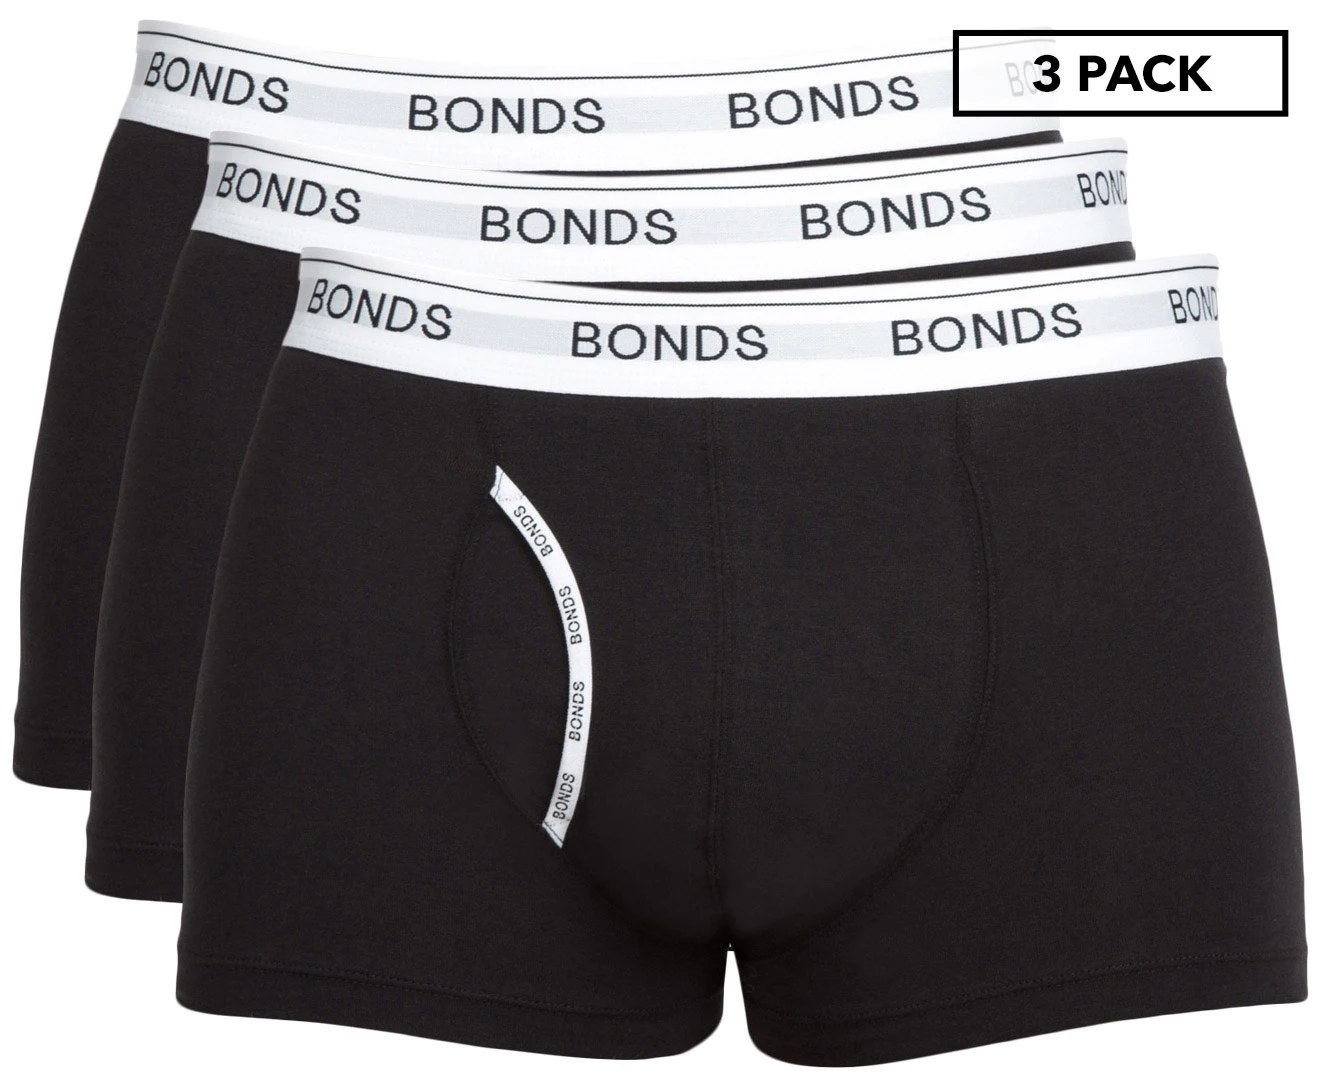 Bonds Women's Cottontails Full Briefs 3 Pack - Black